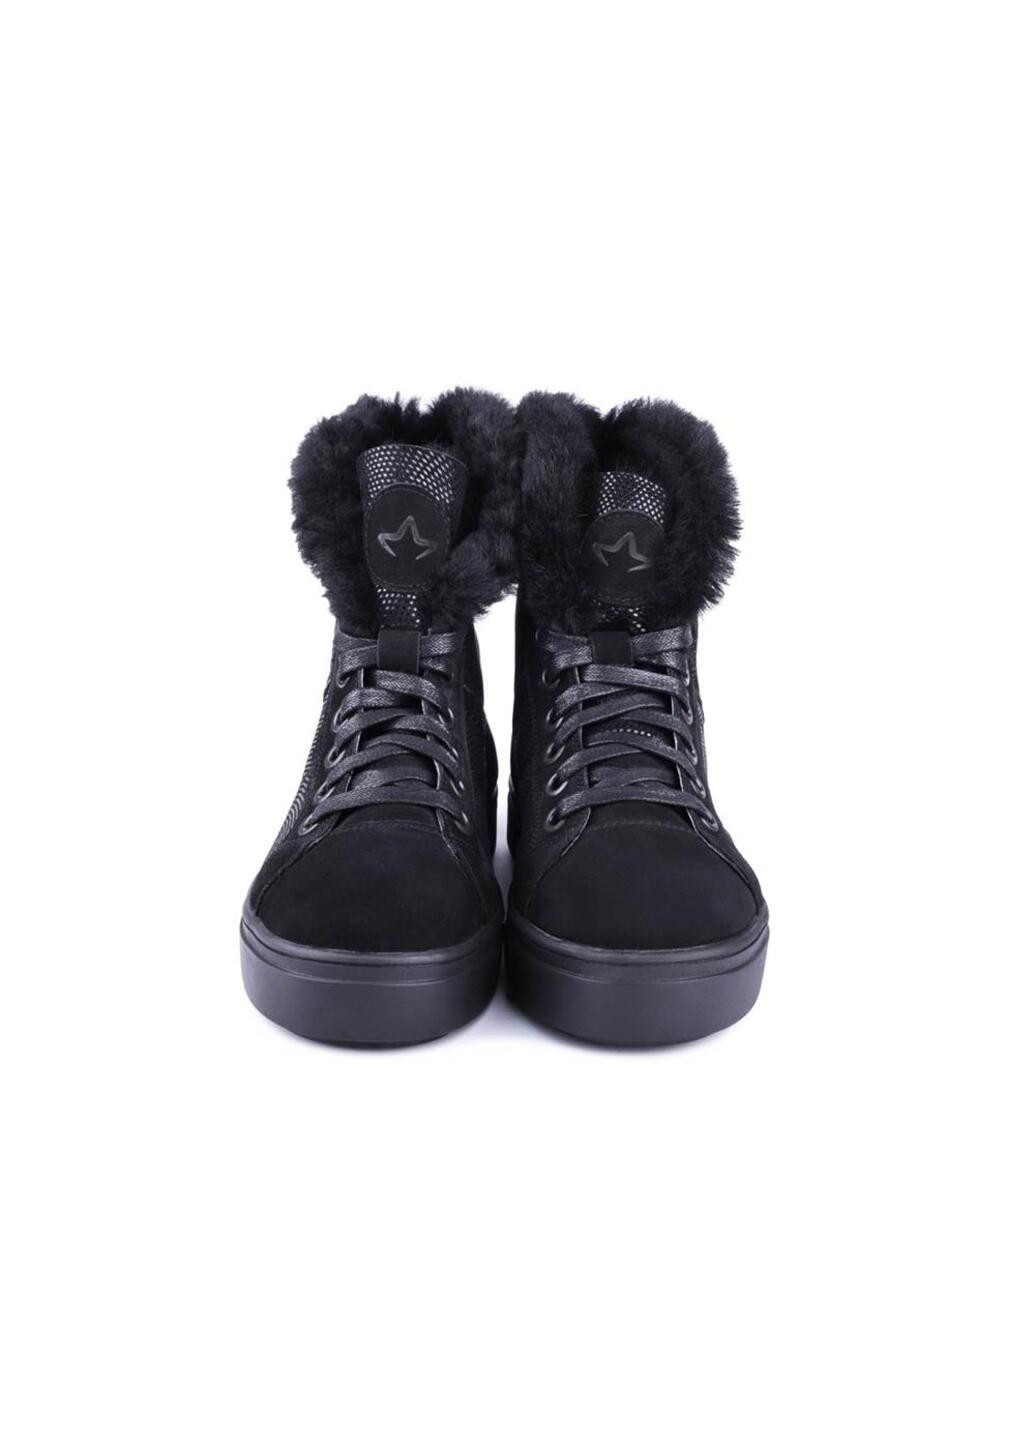 Зимние ботинки женские бренда 8500764_(52н) Mida из натурального нубука